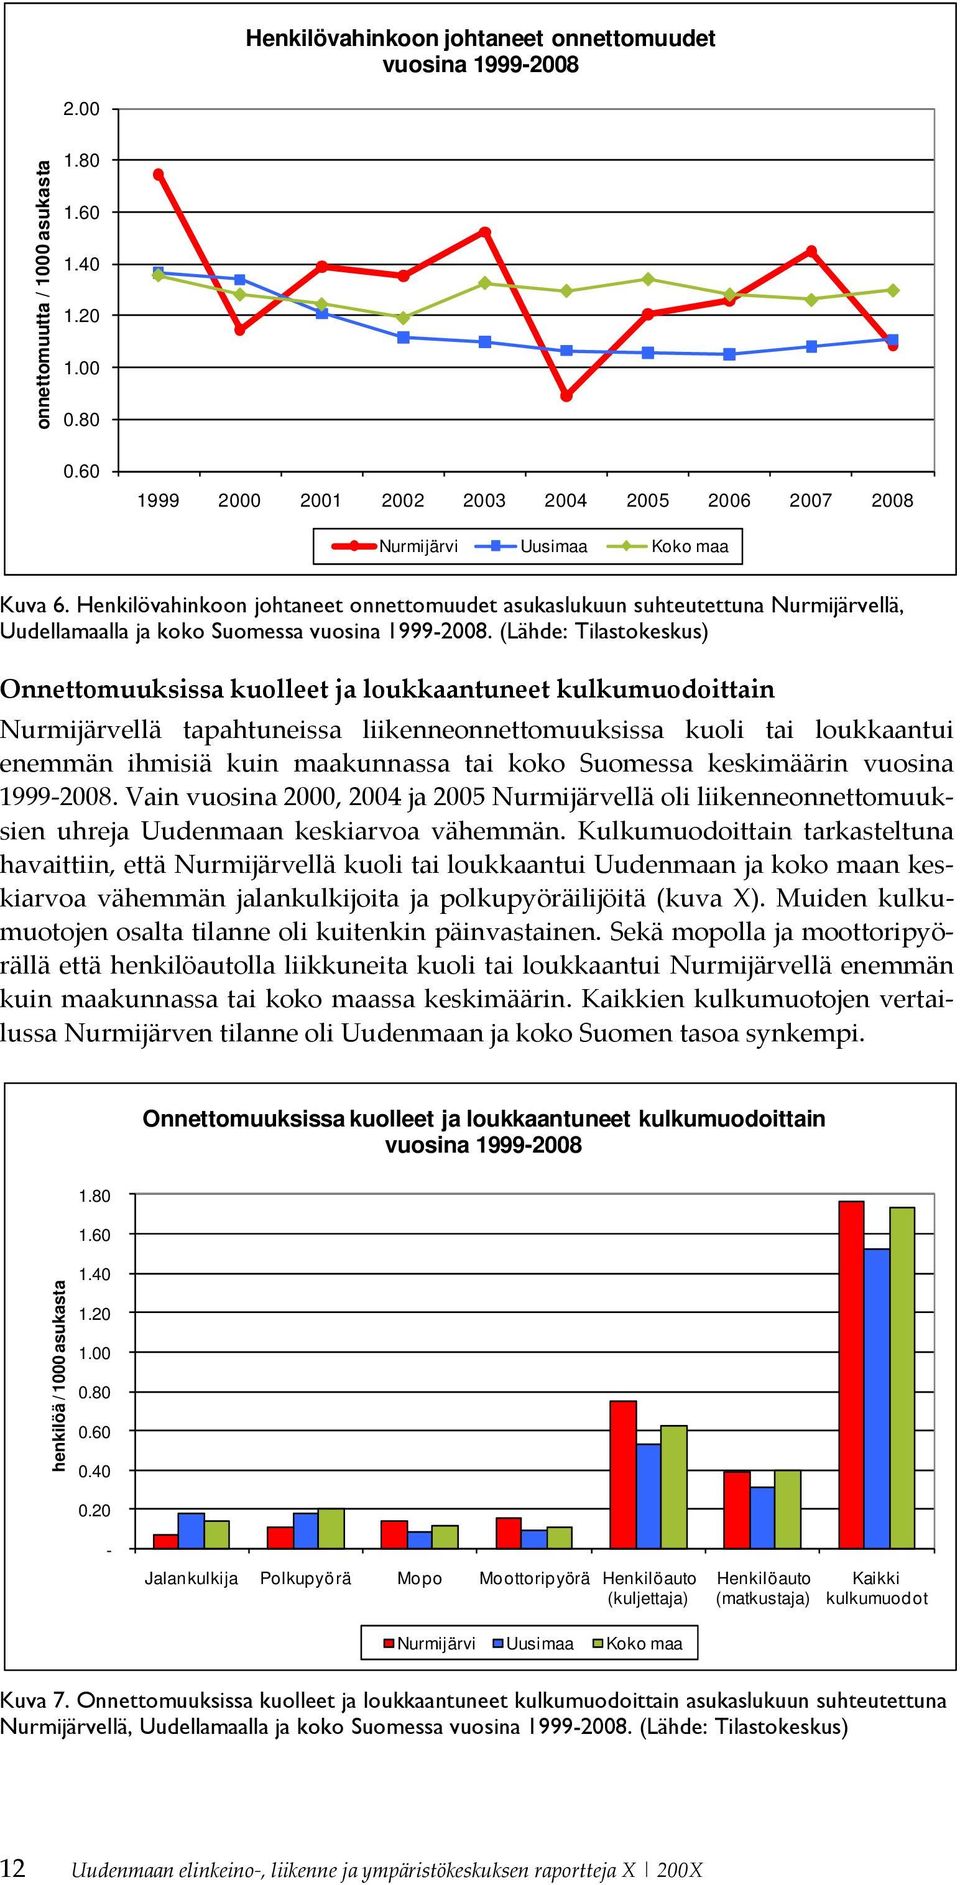 Henkilövahinkoon johtaneet onnettomuudet asukaslukuun suhteutettuna Nurmijärvellä, Uudellamaalla ja koko Suomessa vuosina 1999-2008.